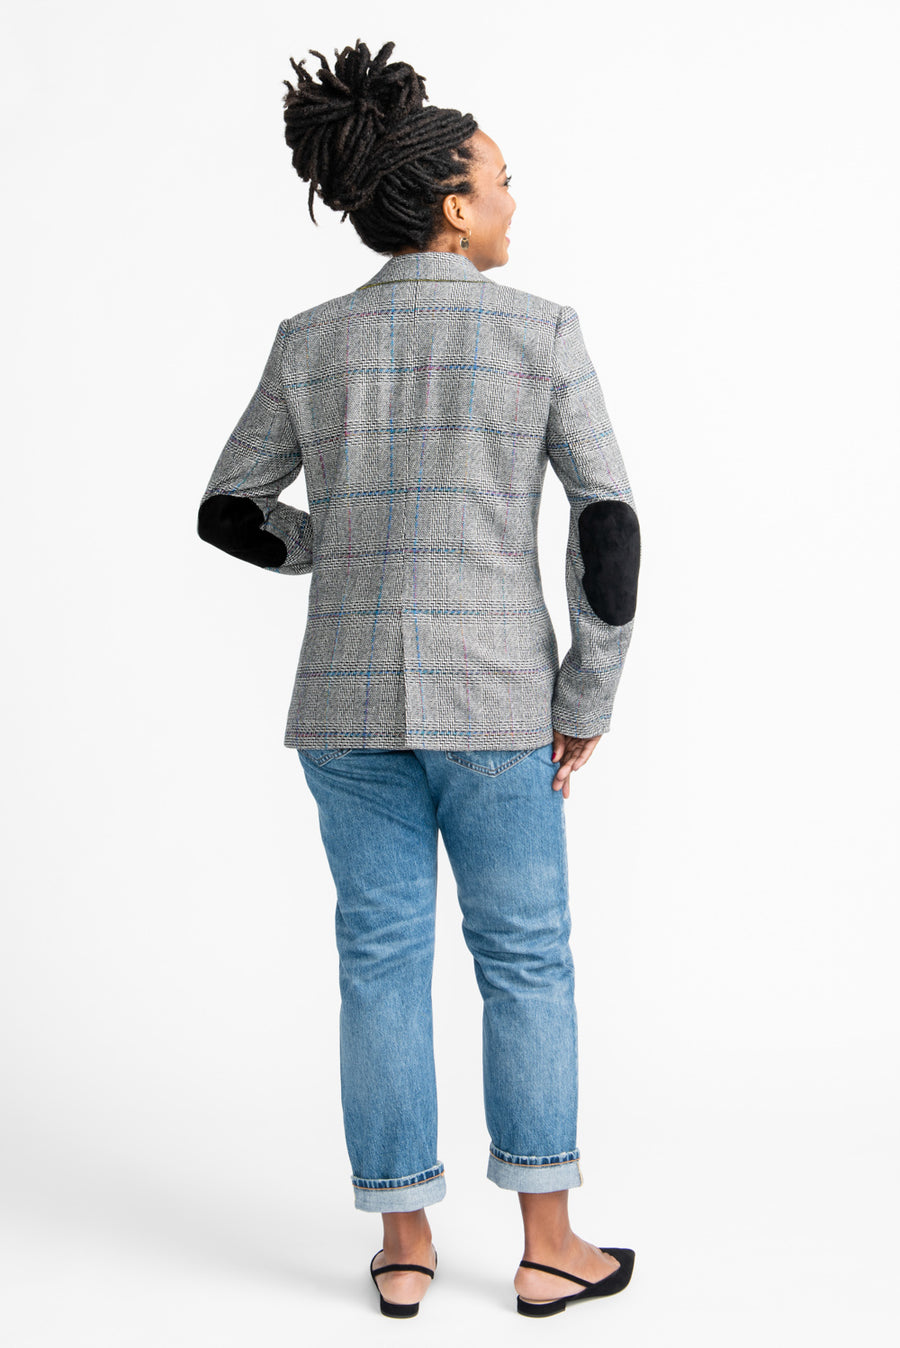 Jasika Blazer Pattern // Tailored Jacket Pattern // Closet Core Patterns